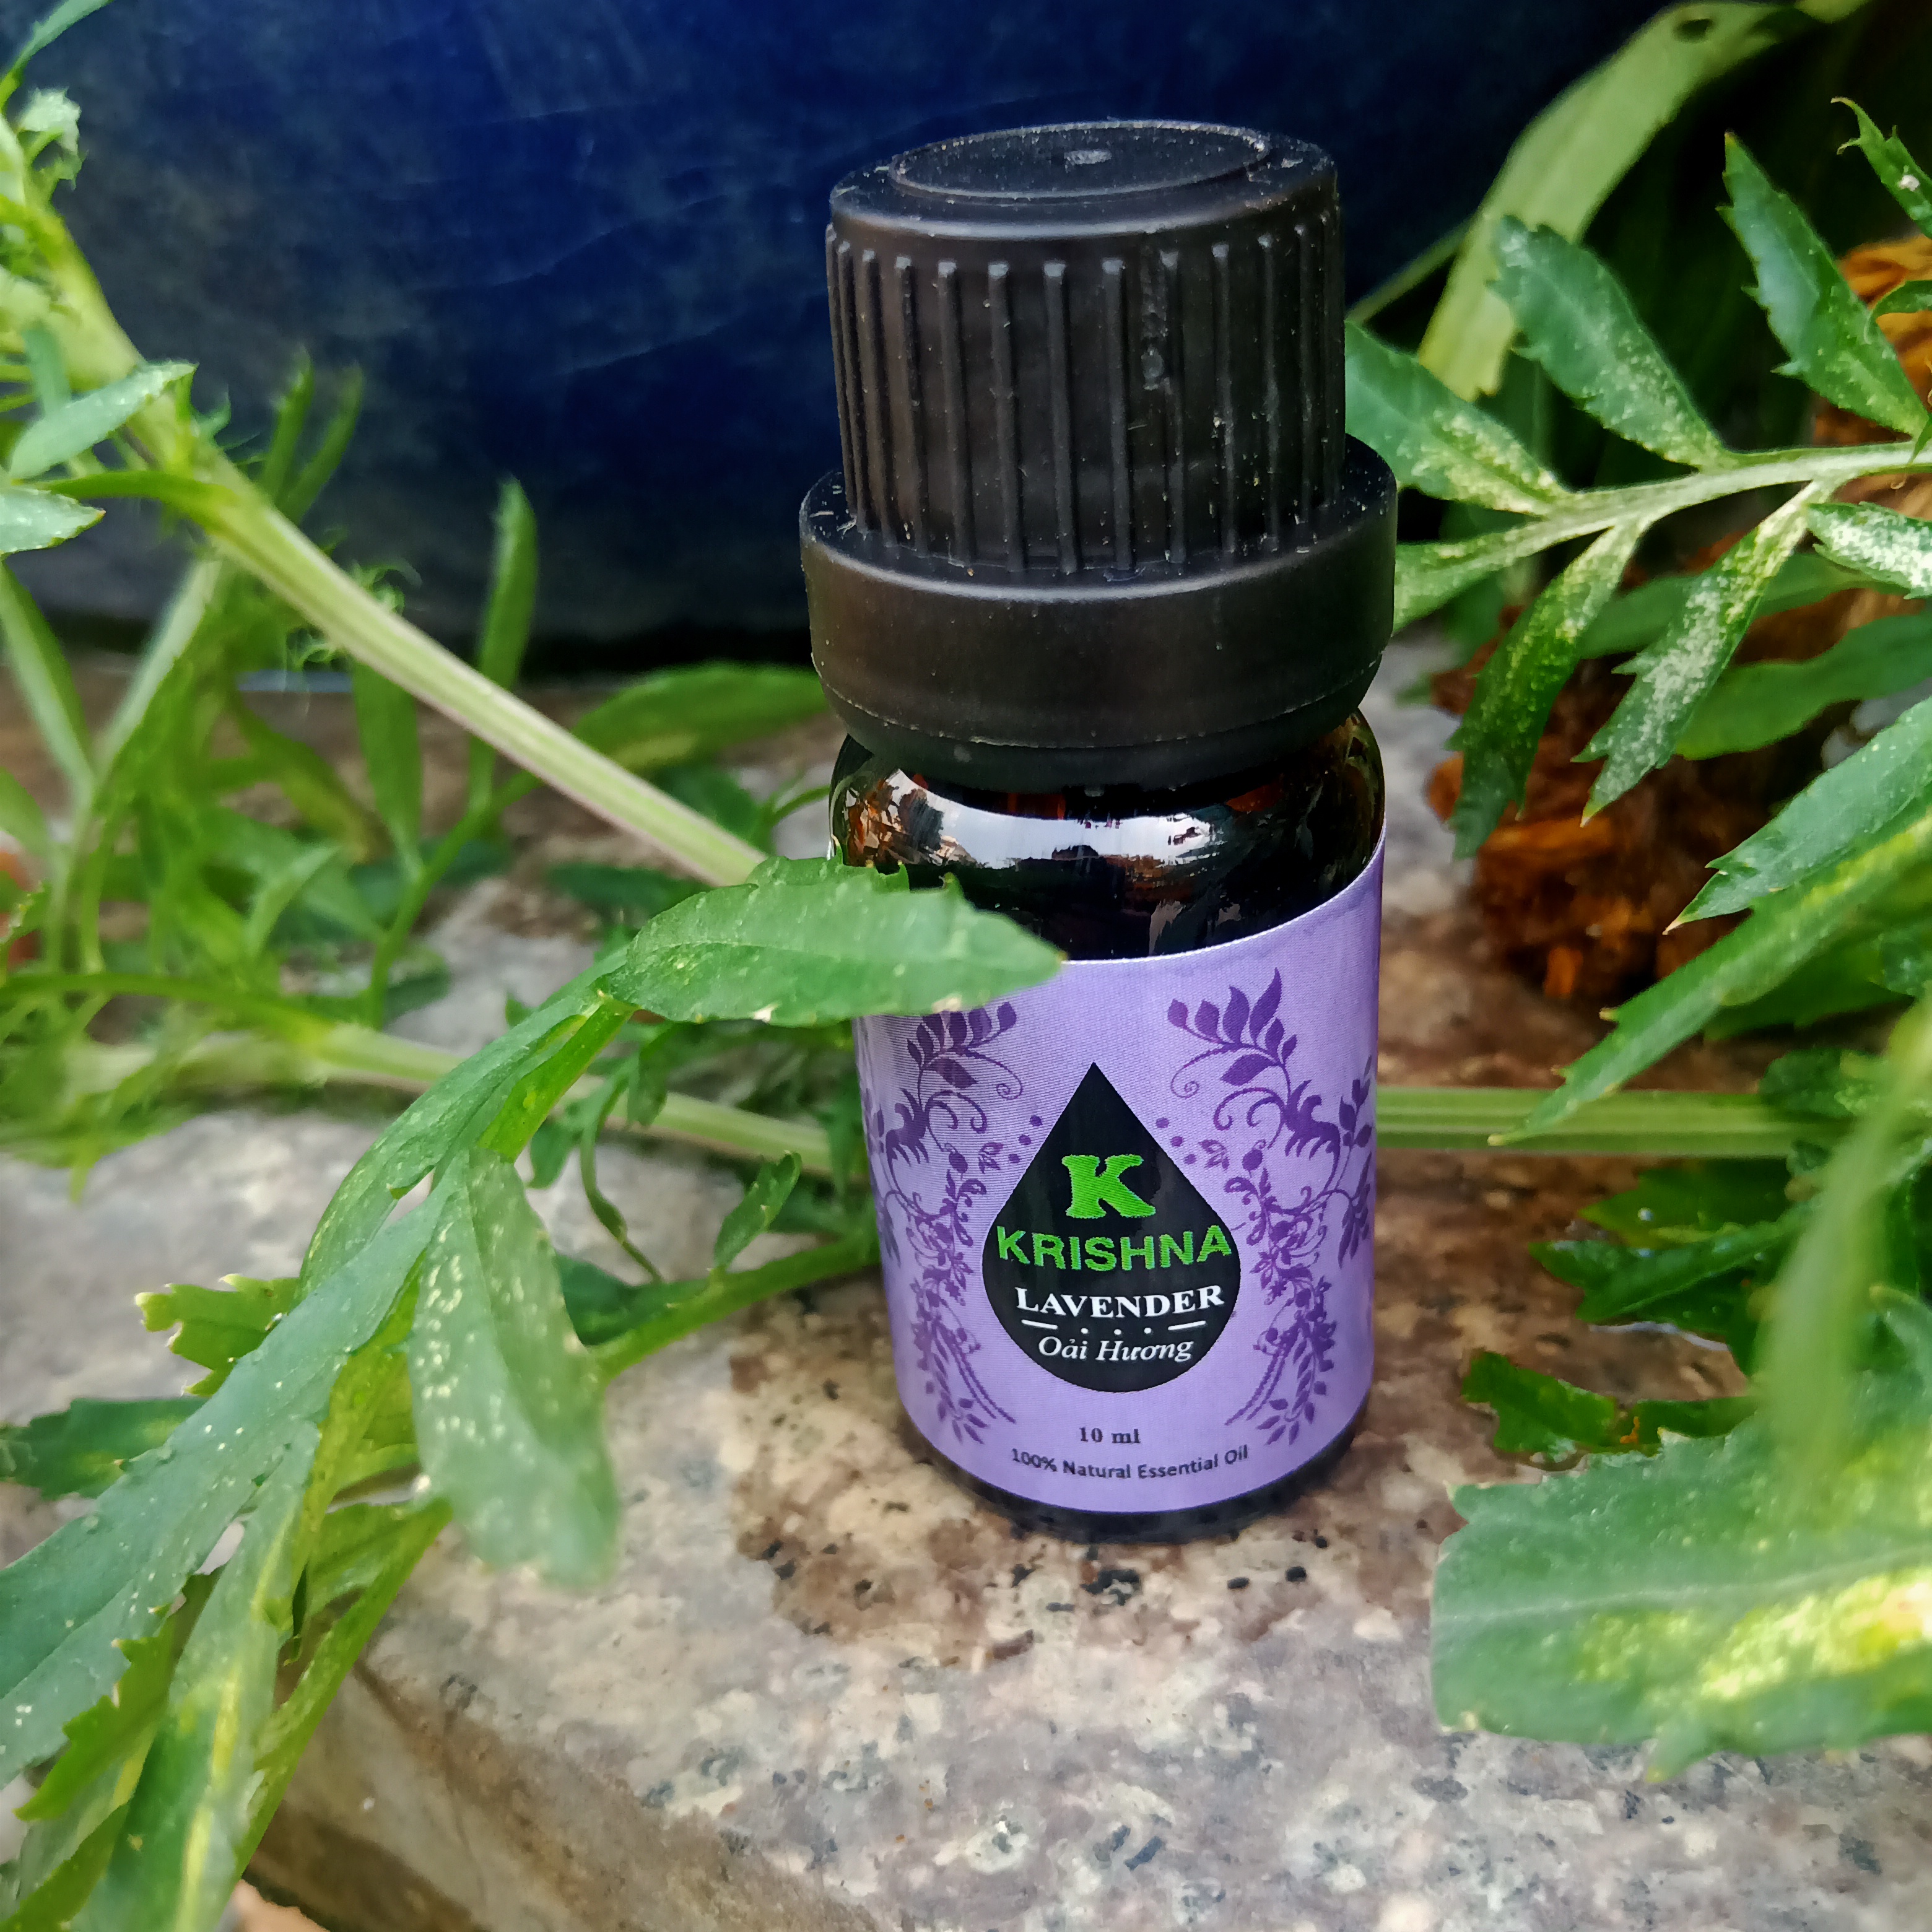 Tinh dầu Oải hương KRISHNA cao cấp nguyên chất nhập khẩu 10ml - Lavender Essential Oil - Tinh dầu xông phòng giúp thư giãn, giảm căng thẳng, khử mùi, nâng cao chất lượng giấc ngủ